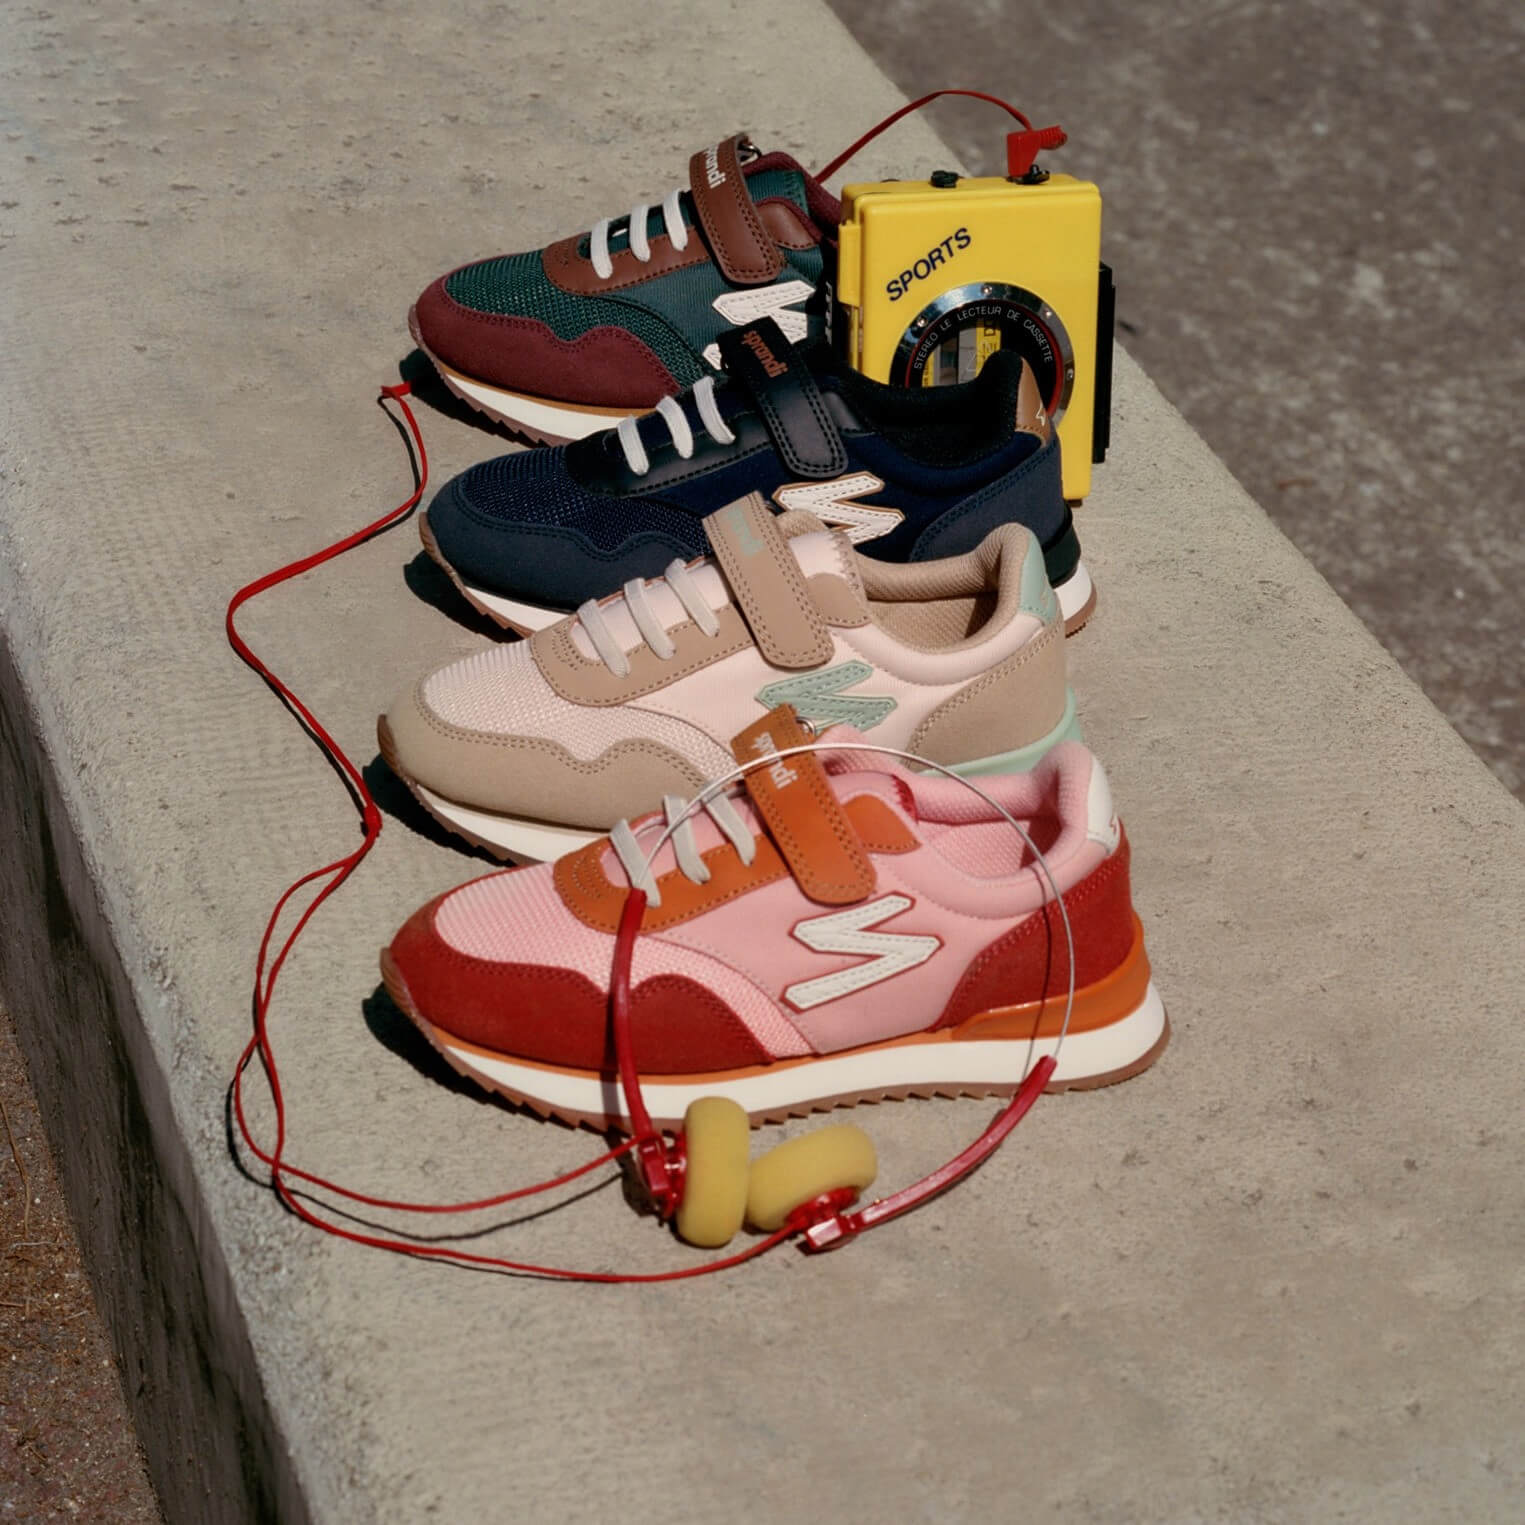 Descoperă noile modele de pantofi sport din colecția Sprandi